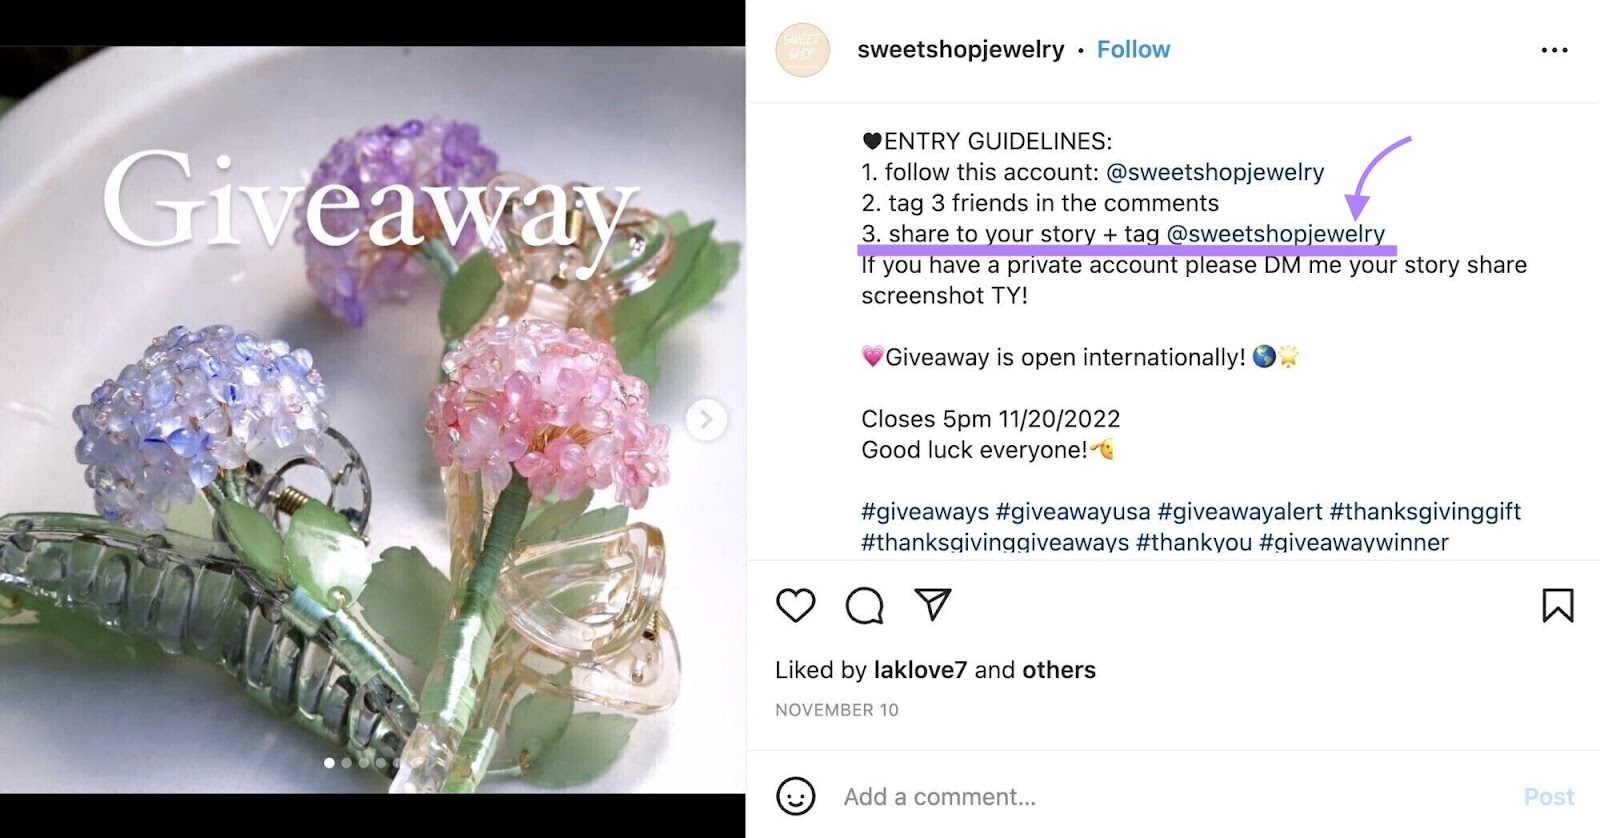 Publicação no Instagram para o concurso promovido por uma pequena joalheria